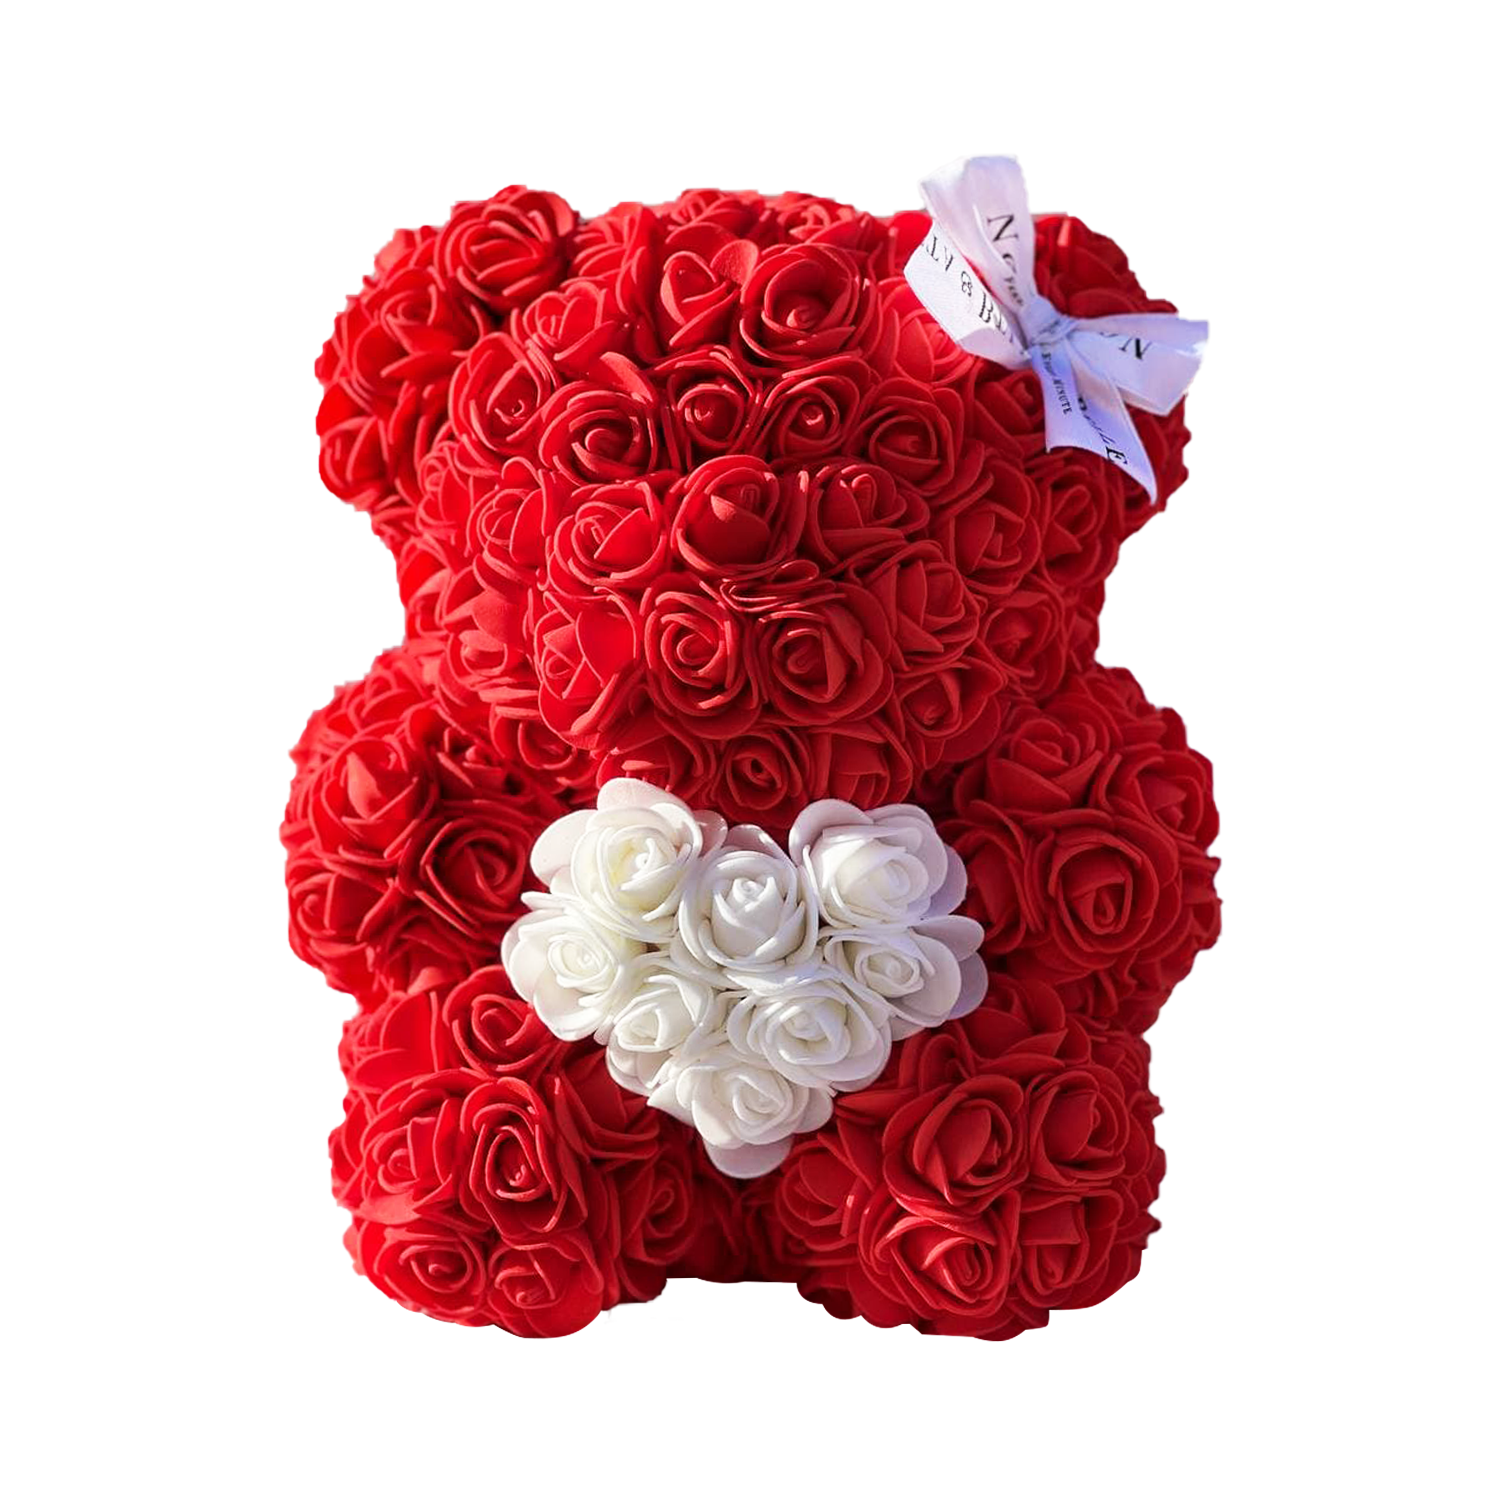 Rot Bär aus künstlichen Rosen mit einem Herzchen - 25 сm 